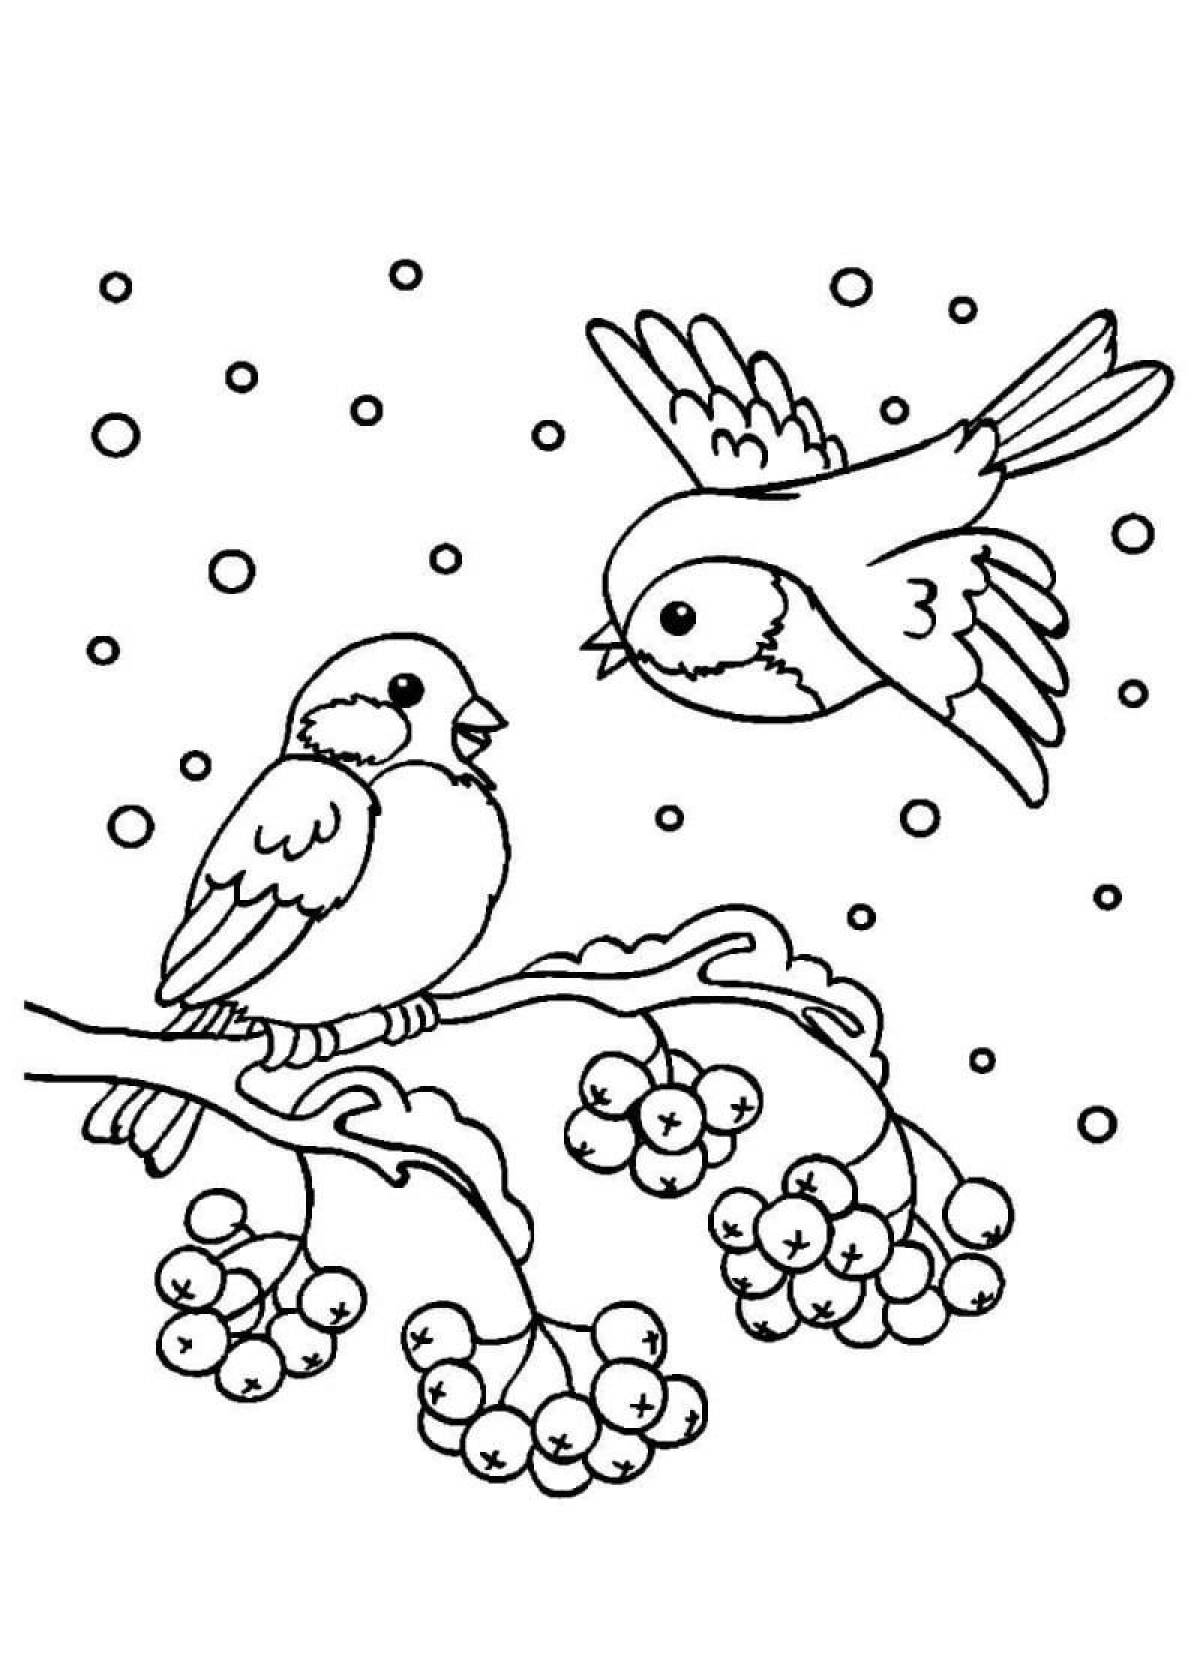 Magic bullfinches on a rowan branch in winter